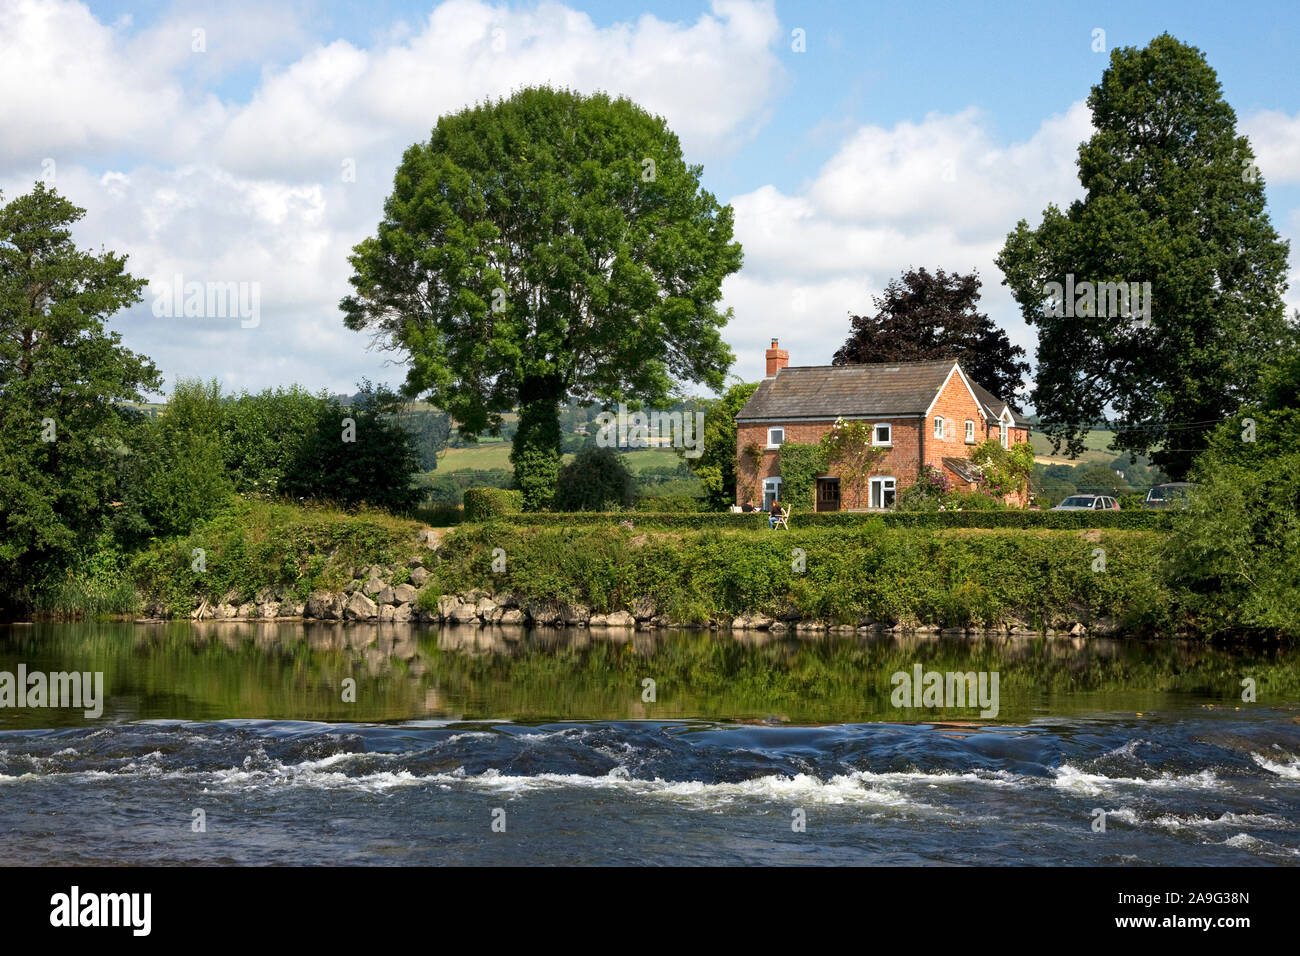 Riverside cottage, rivière Wye, Hay-on-Wye. Powys, Pays de Galles, Royaume-Uni Banque D'Images